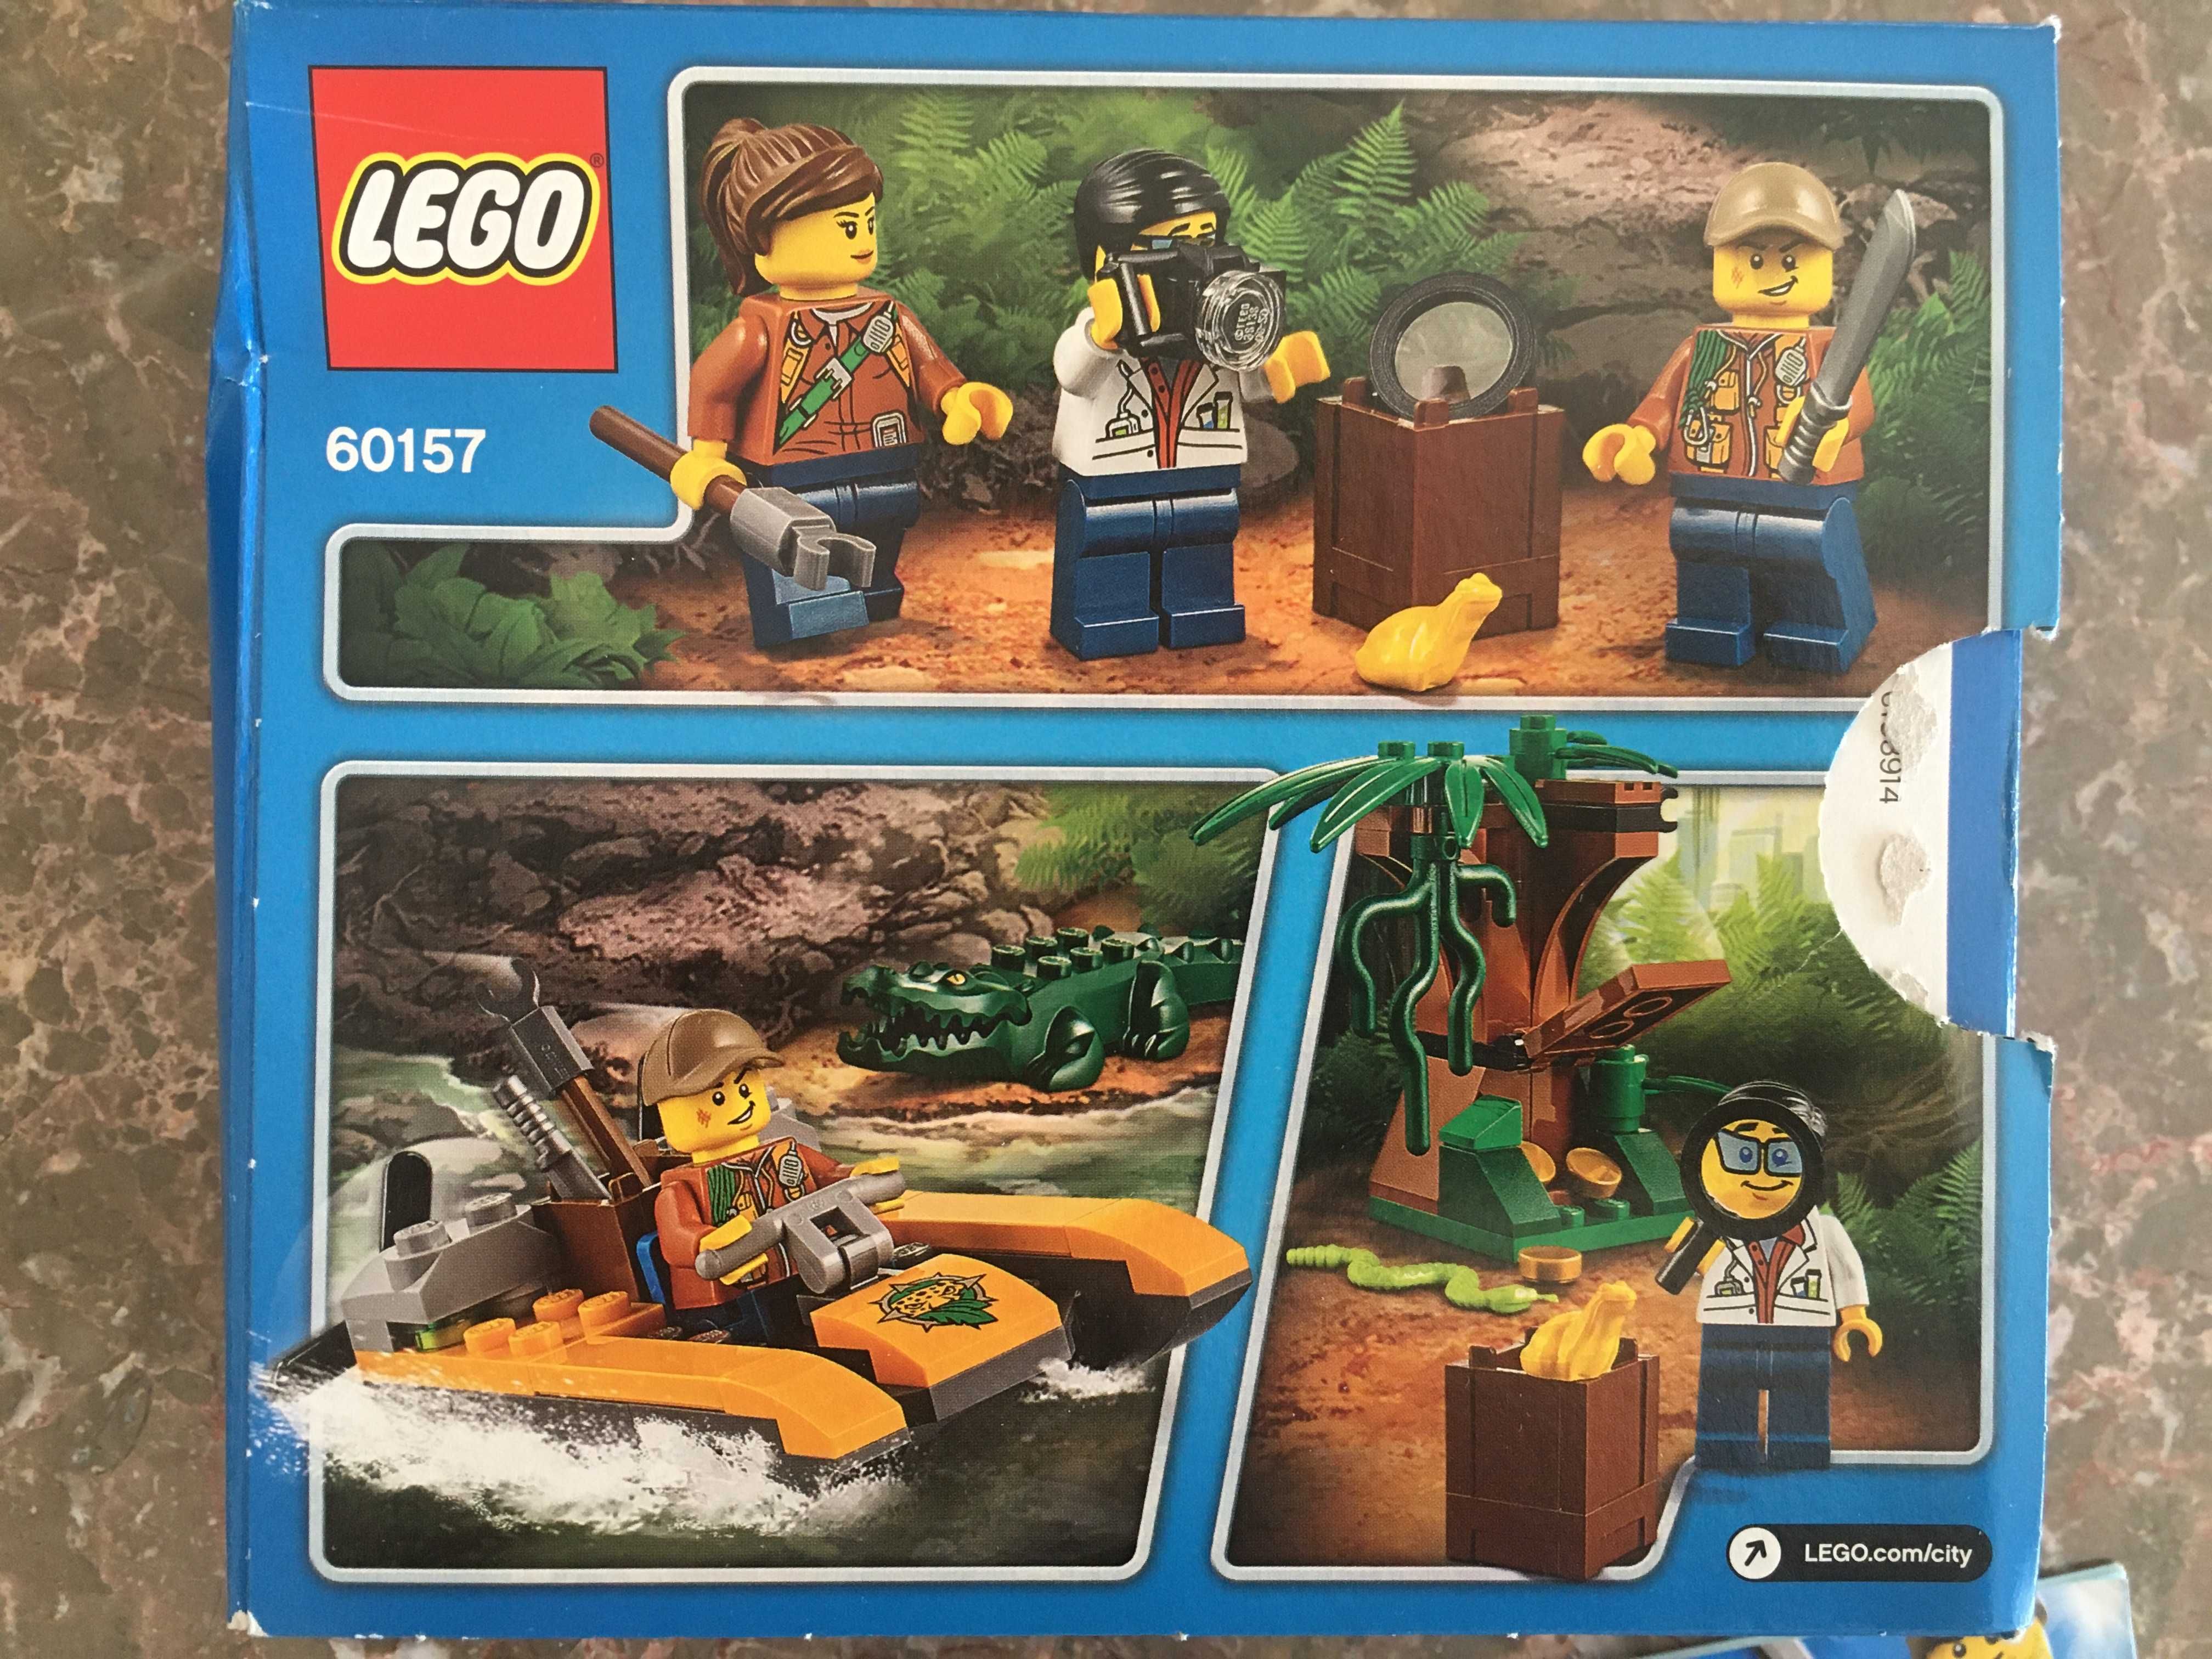 LEGO 60157 Completo e em bom estado